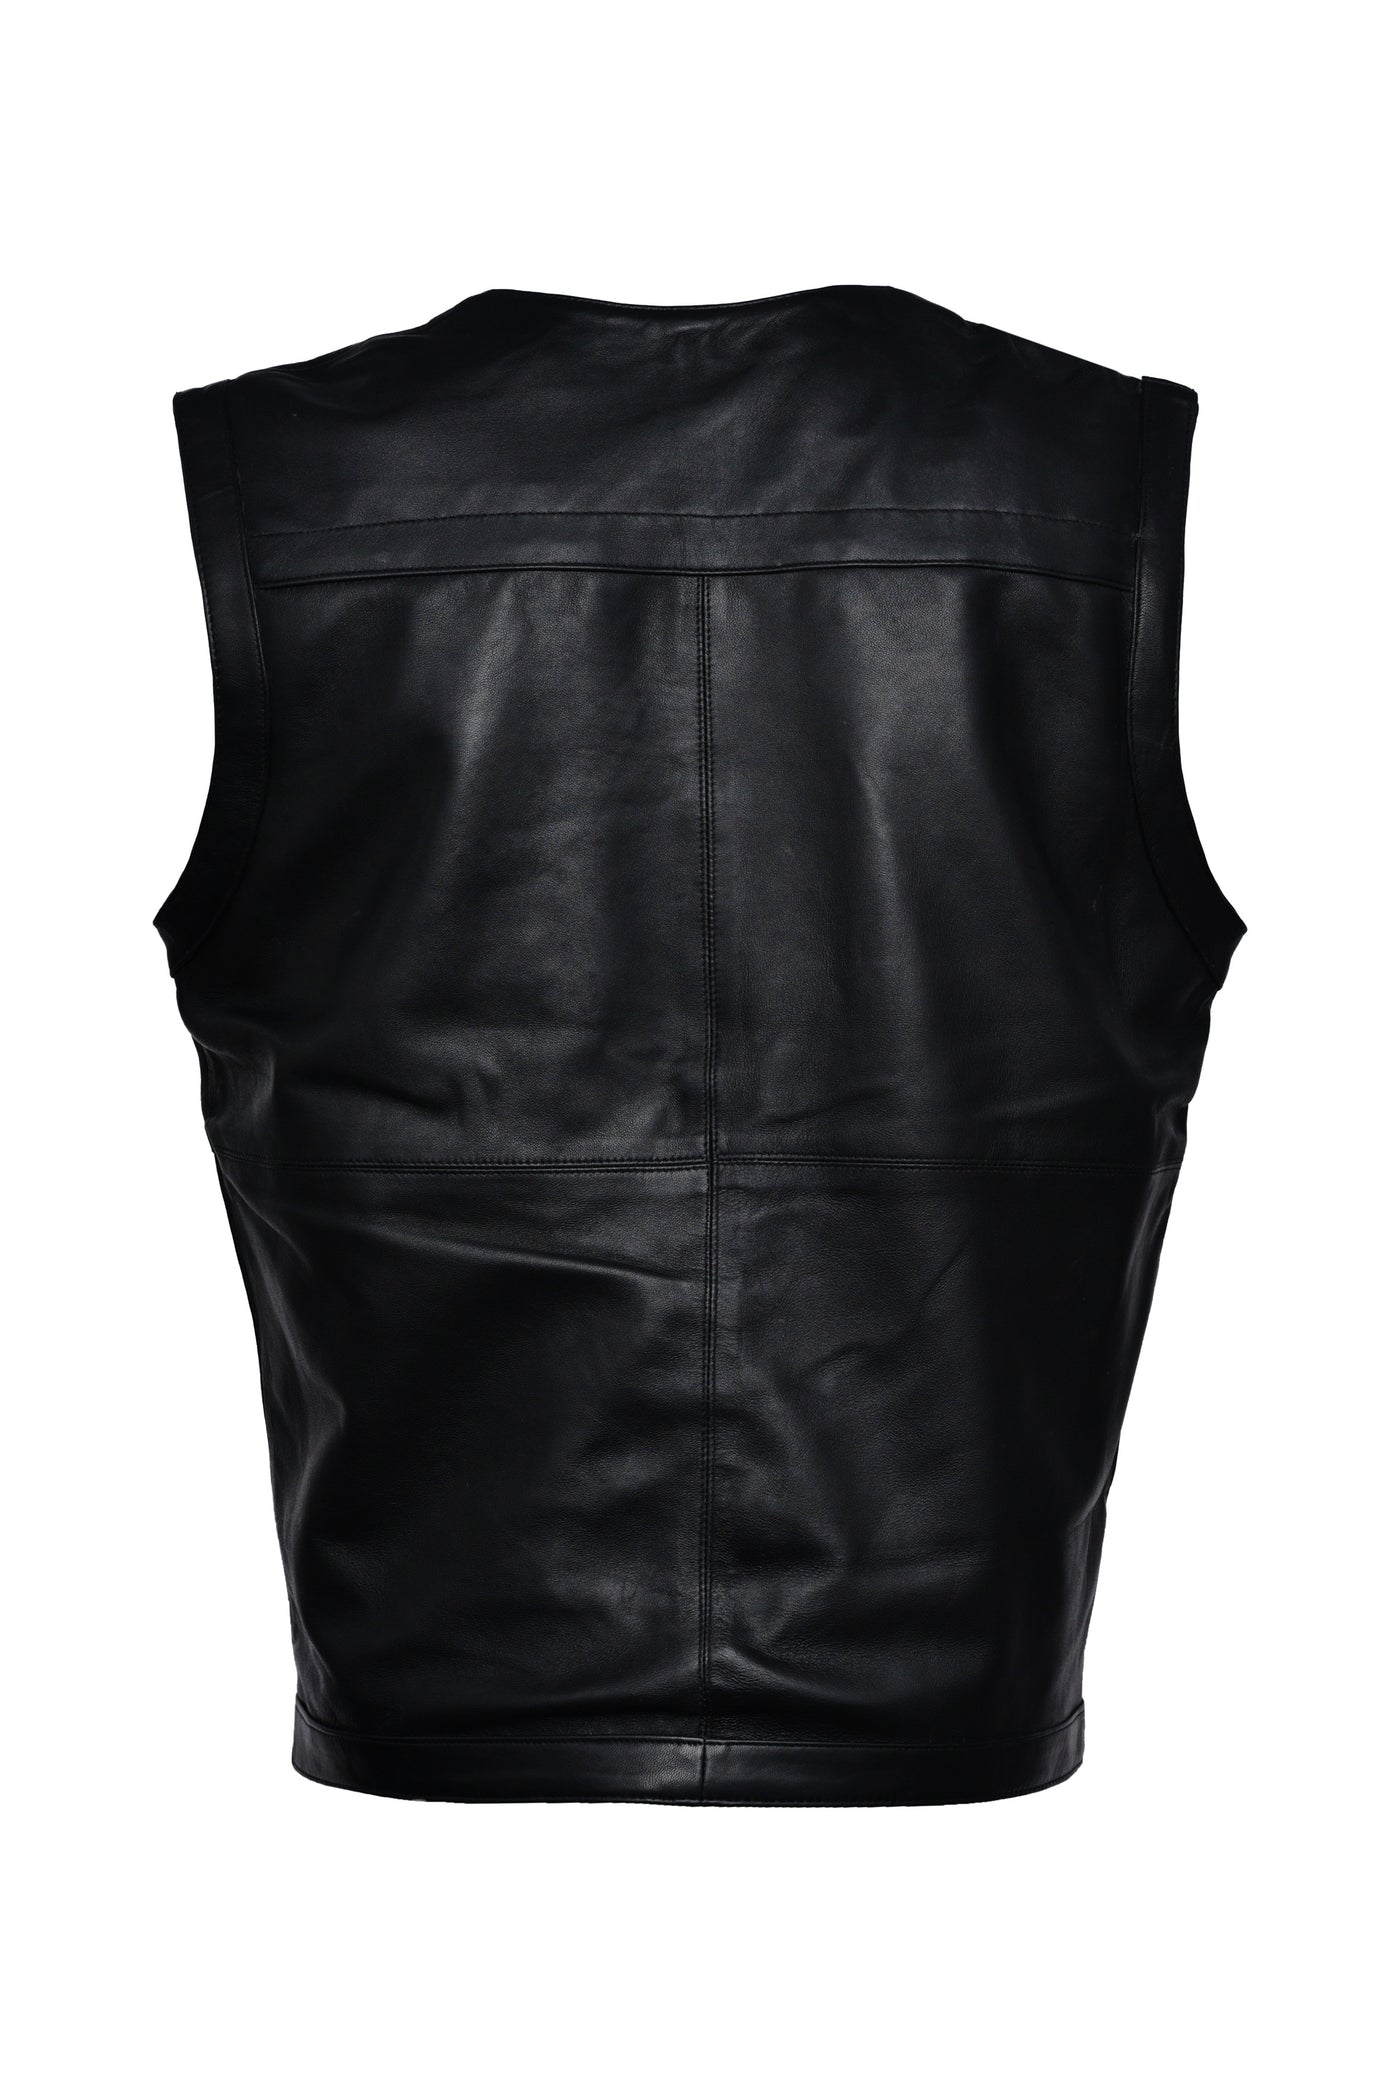 Black Leather Vest For Men